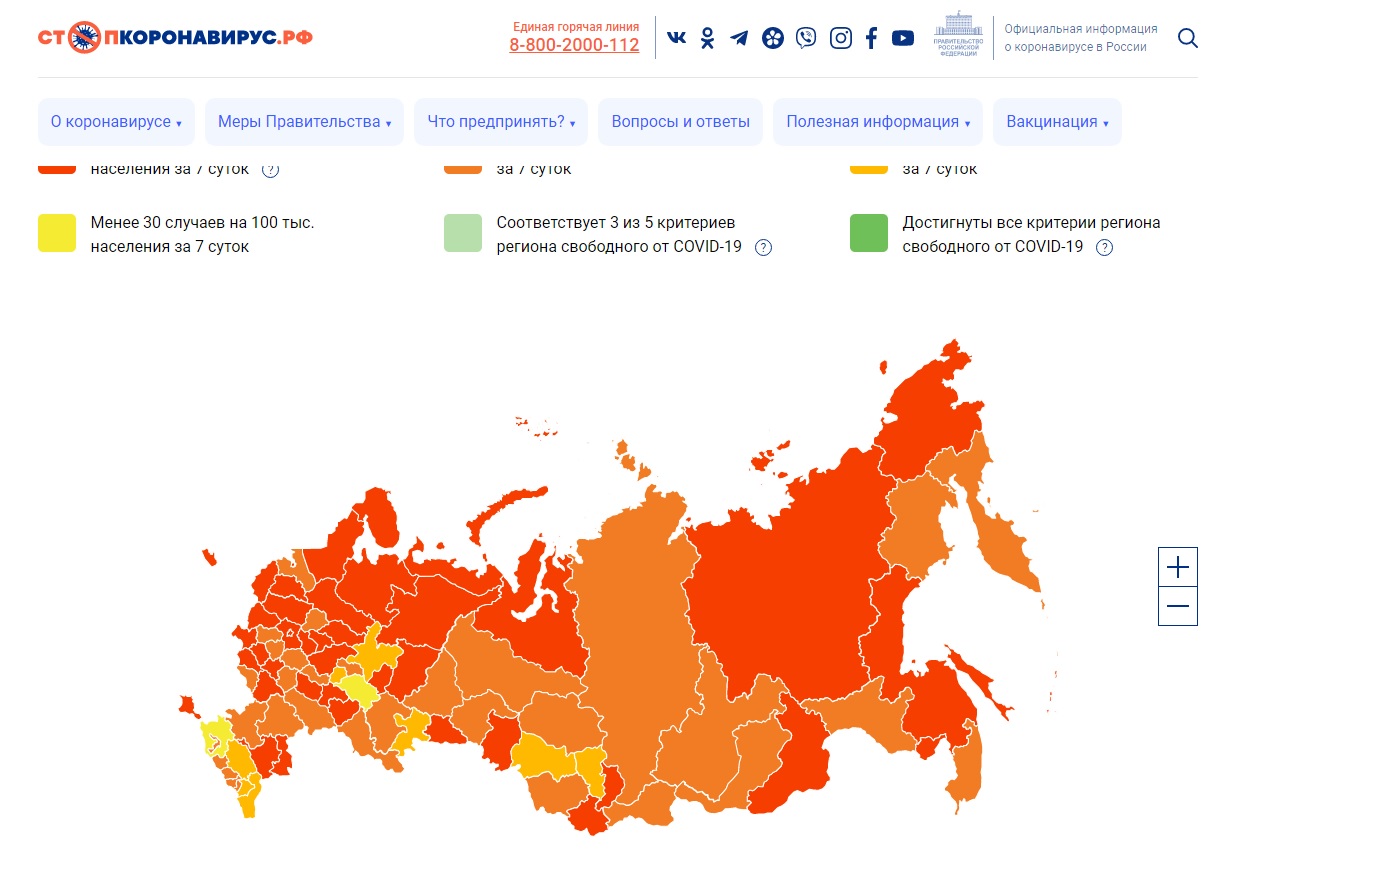 Ярославцы могут посмотреть интерактивную карту QR-кодов на сайте стопкоронавирус